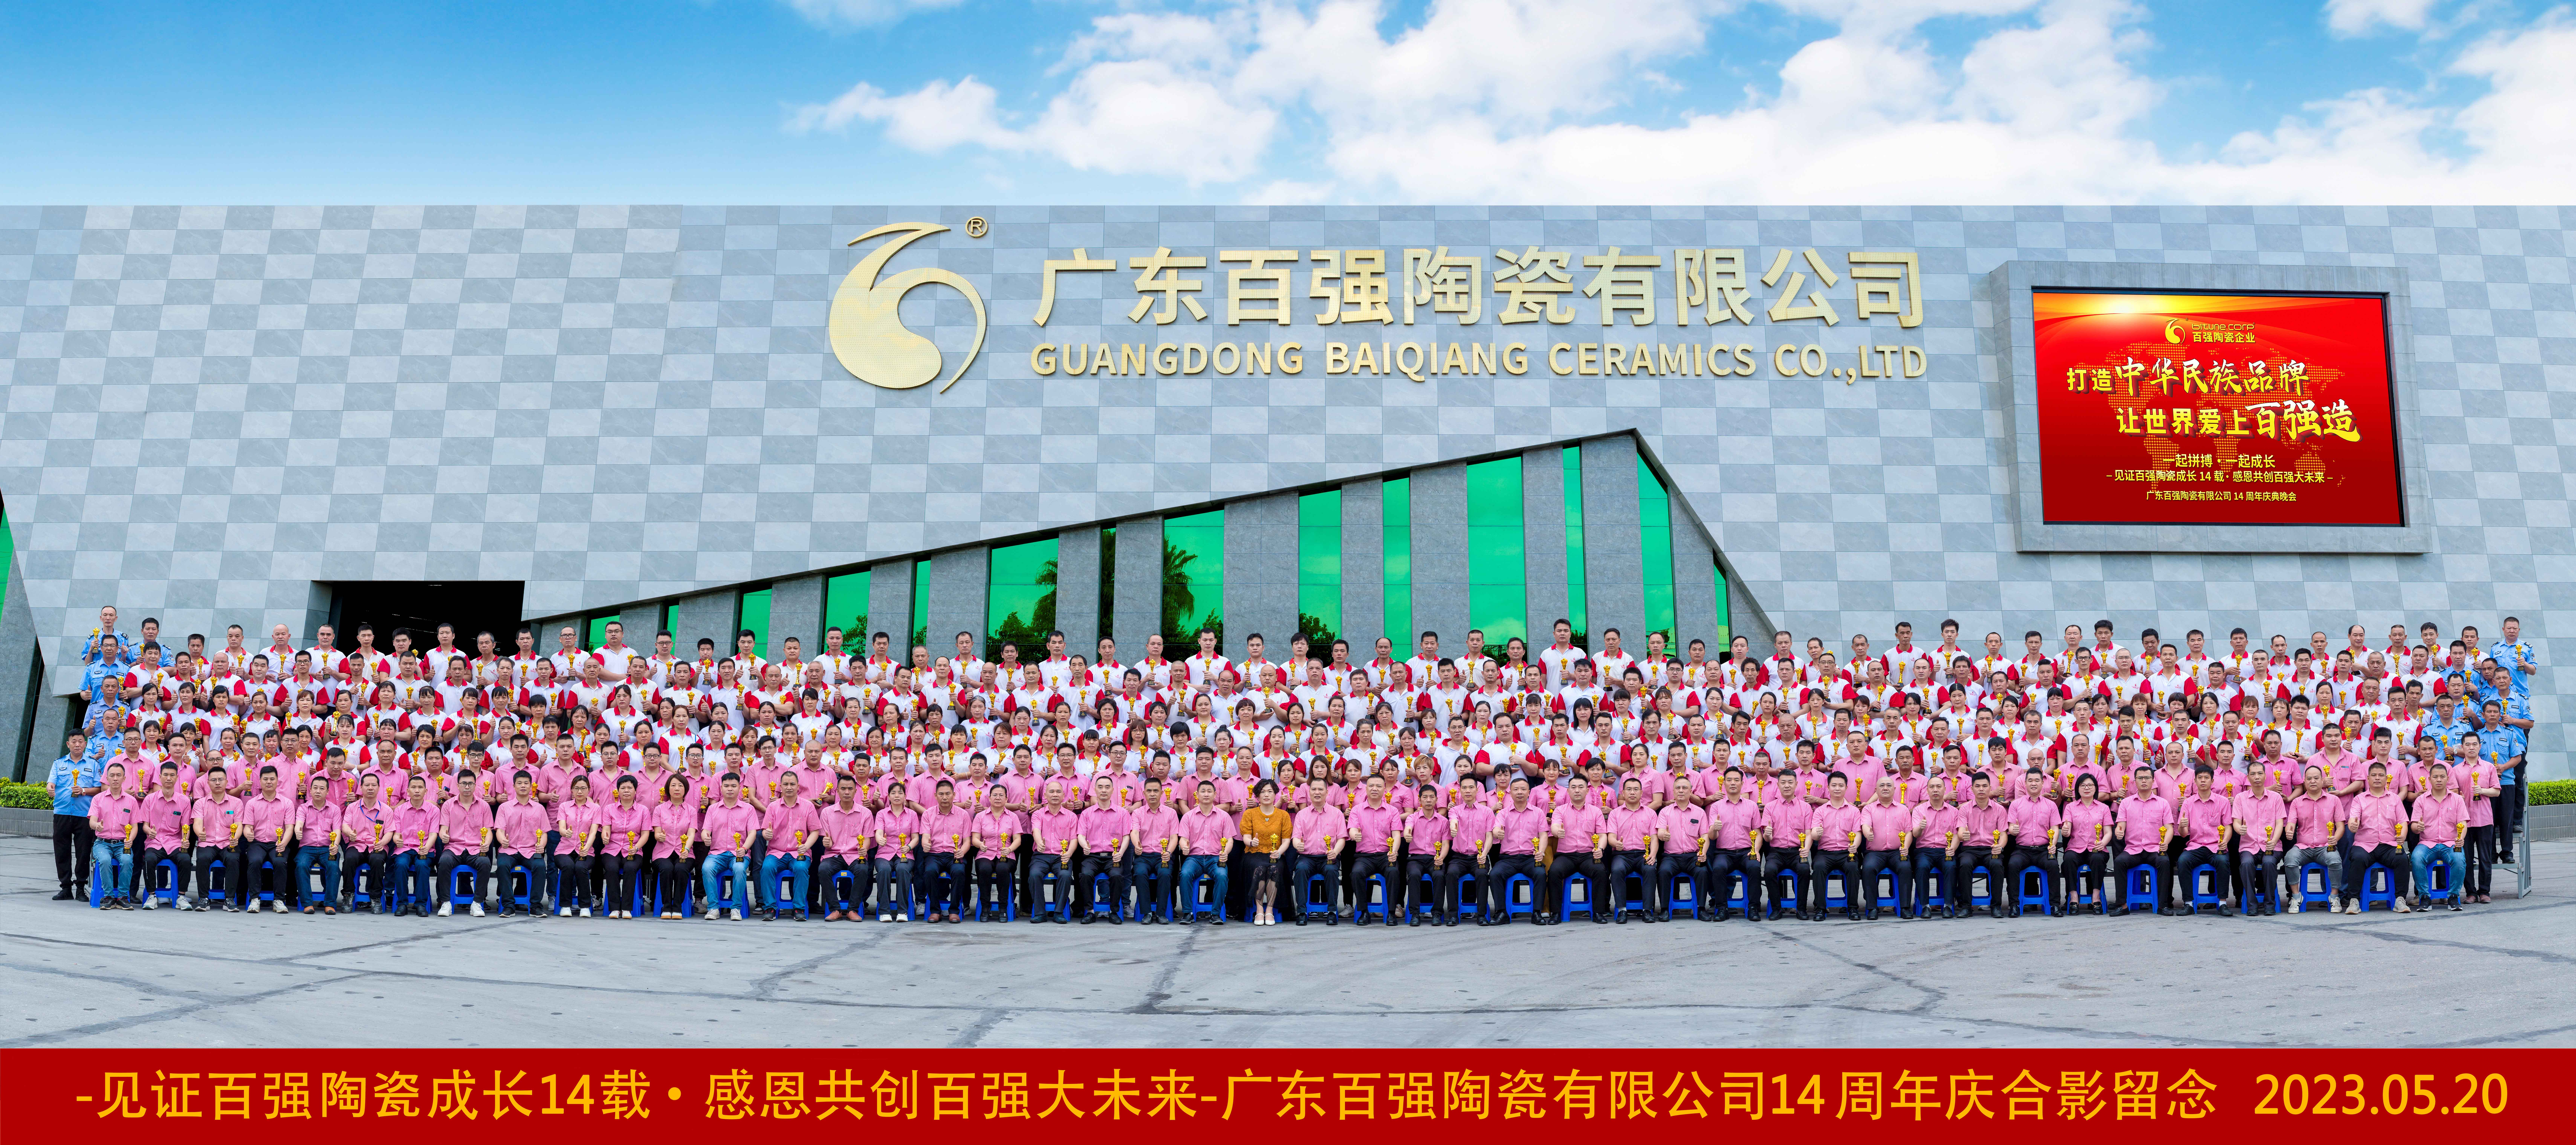 【品牌盛事】“打造中华民族品牌，让世界爱上百强造!”——热烈庆祝欧莱克瓷砖·岩板生产基地百强厂14周年庆！